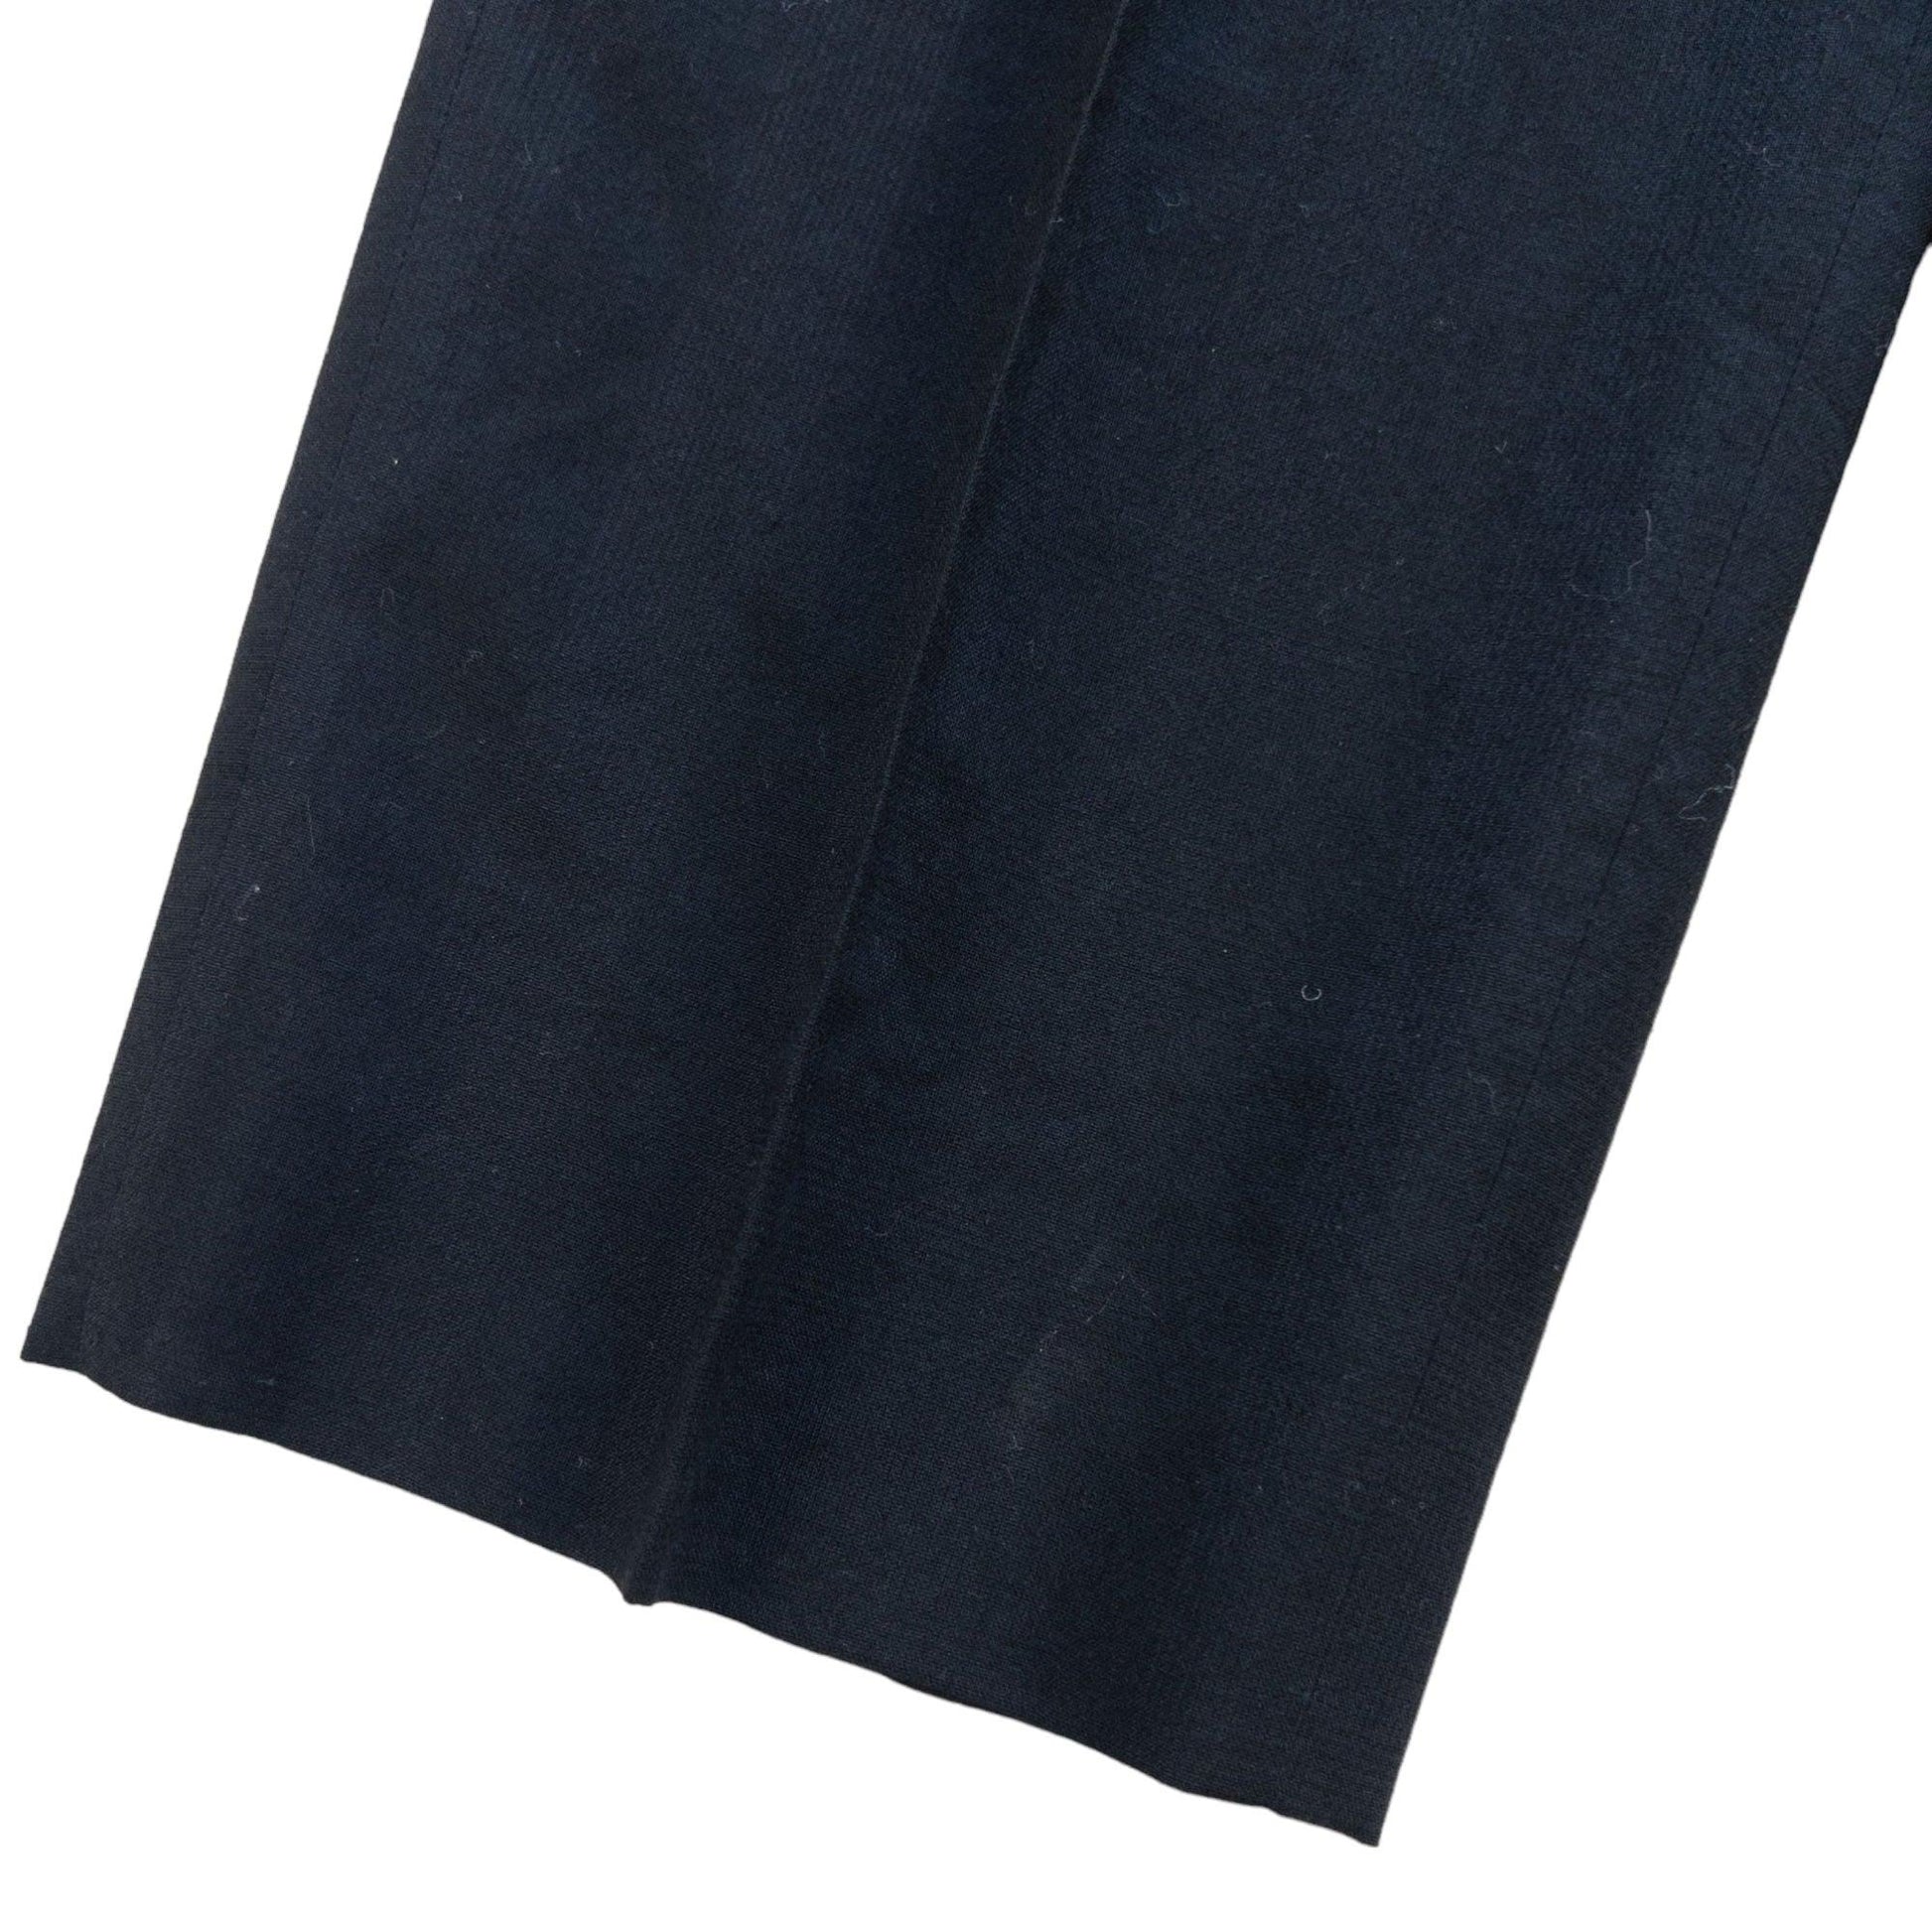 Vintage Comme Des Garcons HOMME DEUX Suit Trousers Size W30 - Known Source